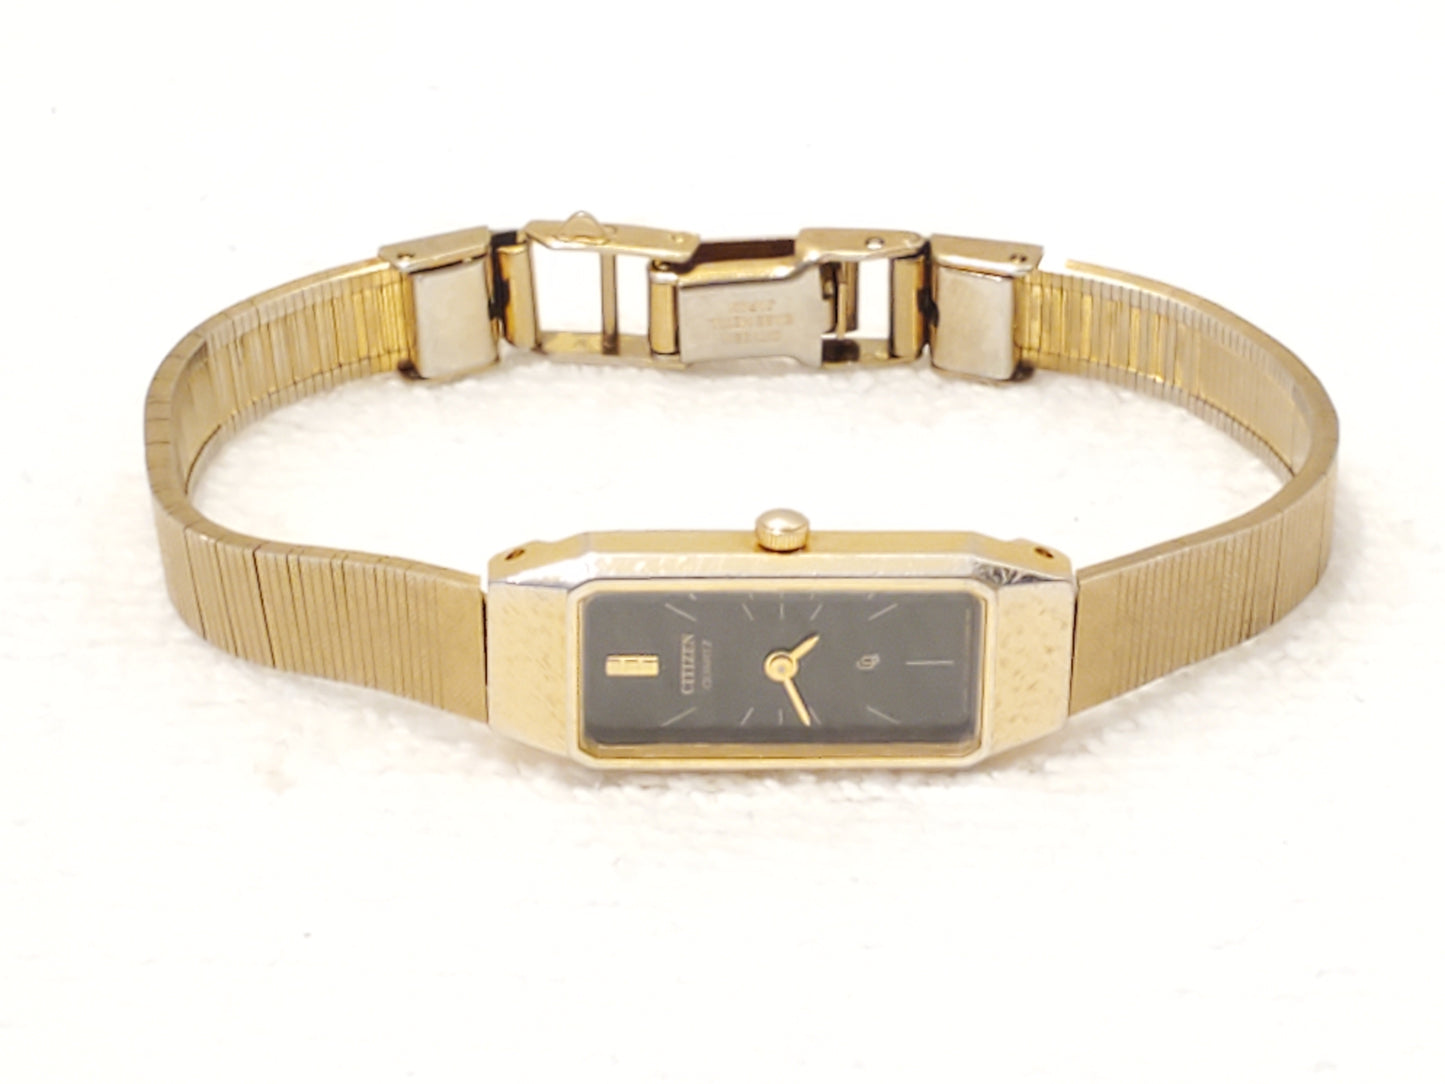 Vintage 1970's Citizen CQ Women's Gold Tone Quartz Watch Black Dial Six Jewels Stainless Steel